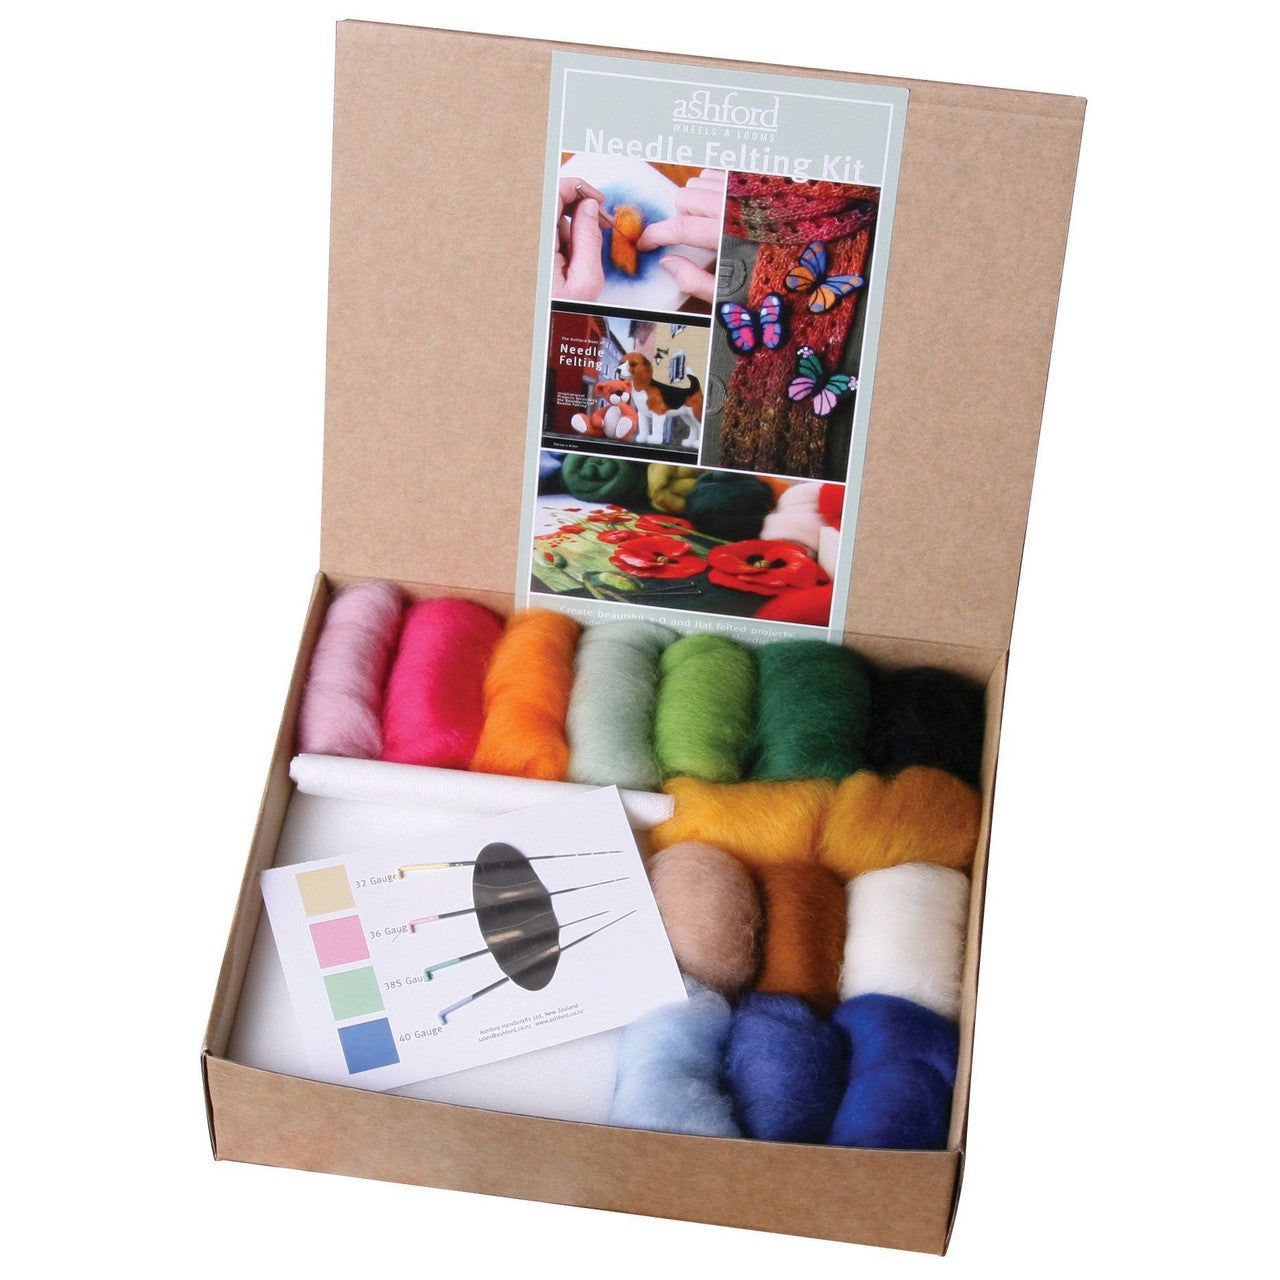 Ashford Needle Felting Kits - your local wool & yarn store Knitnstitch